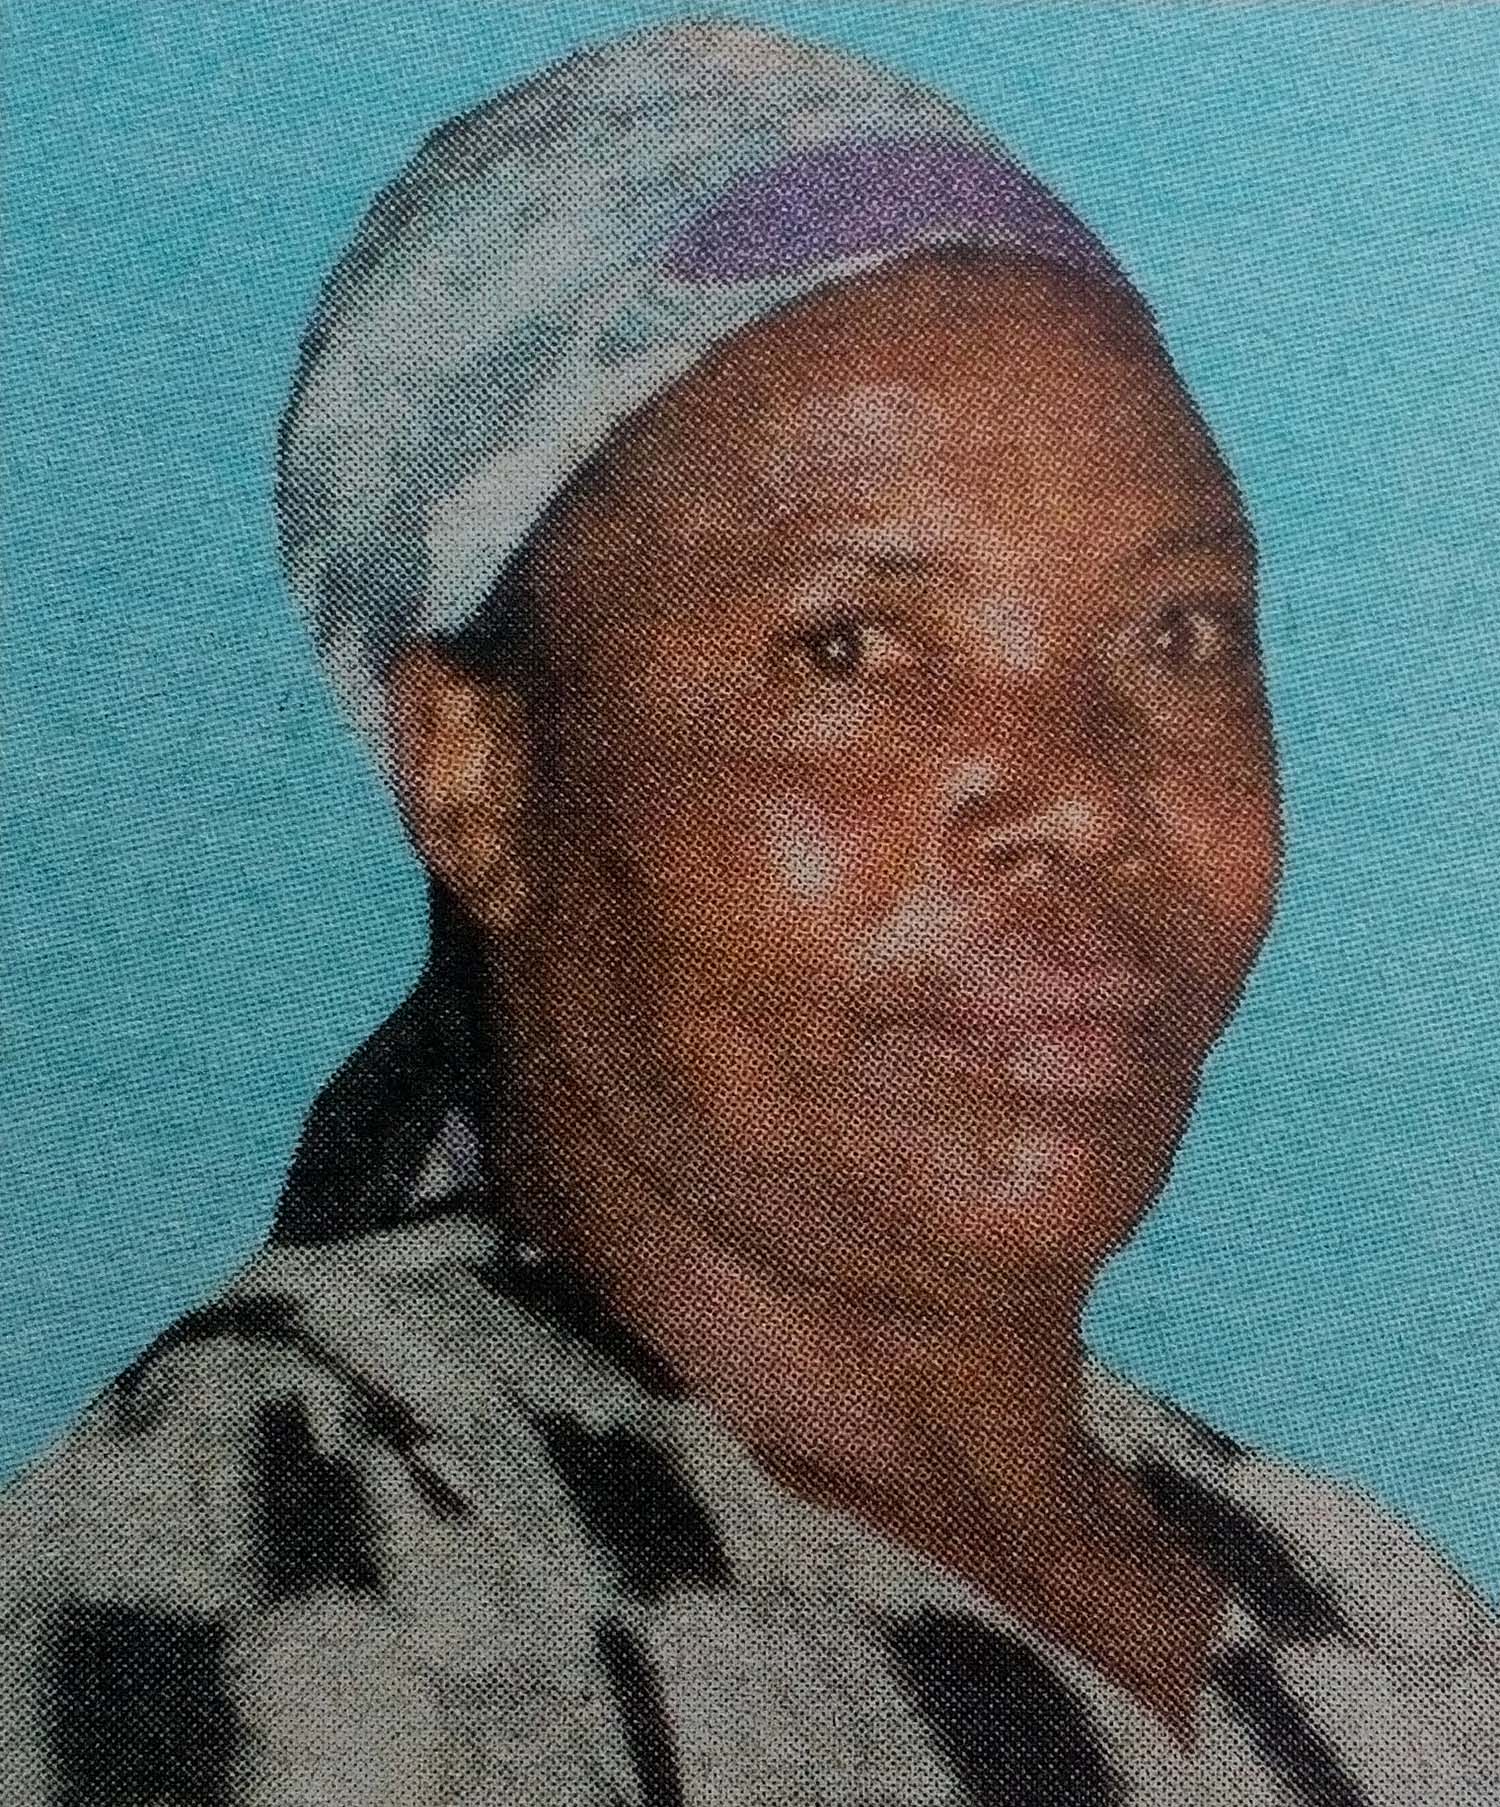 Obituary Image of Sister-in-Christ Rahab Wairuri Gathuya